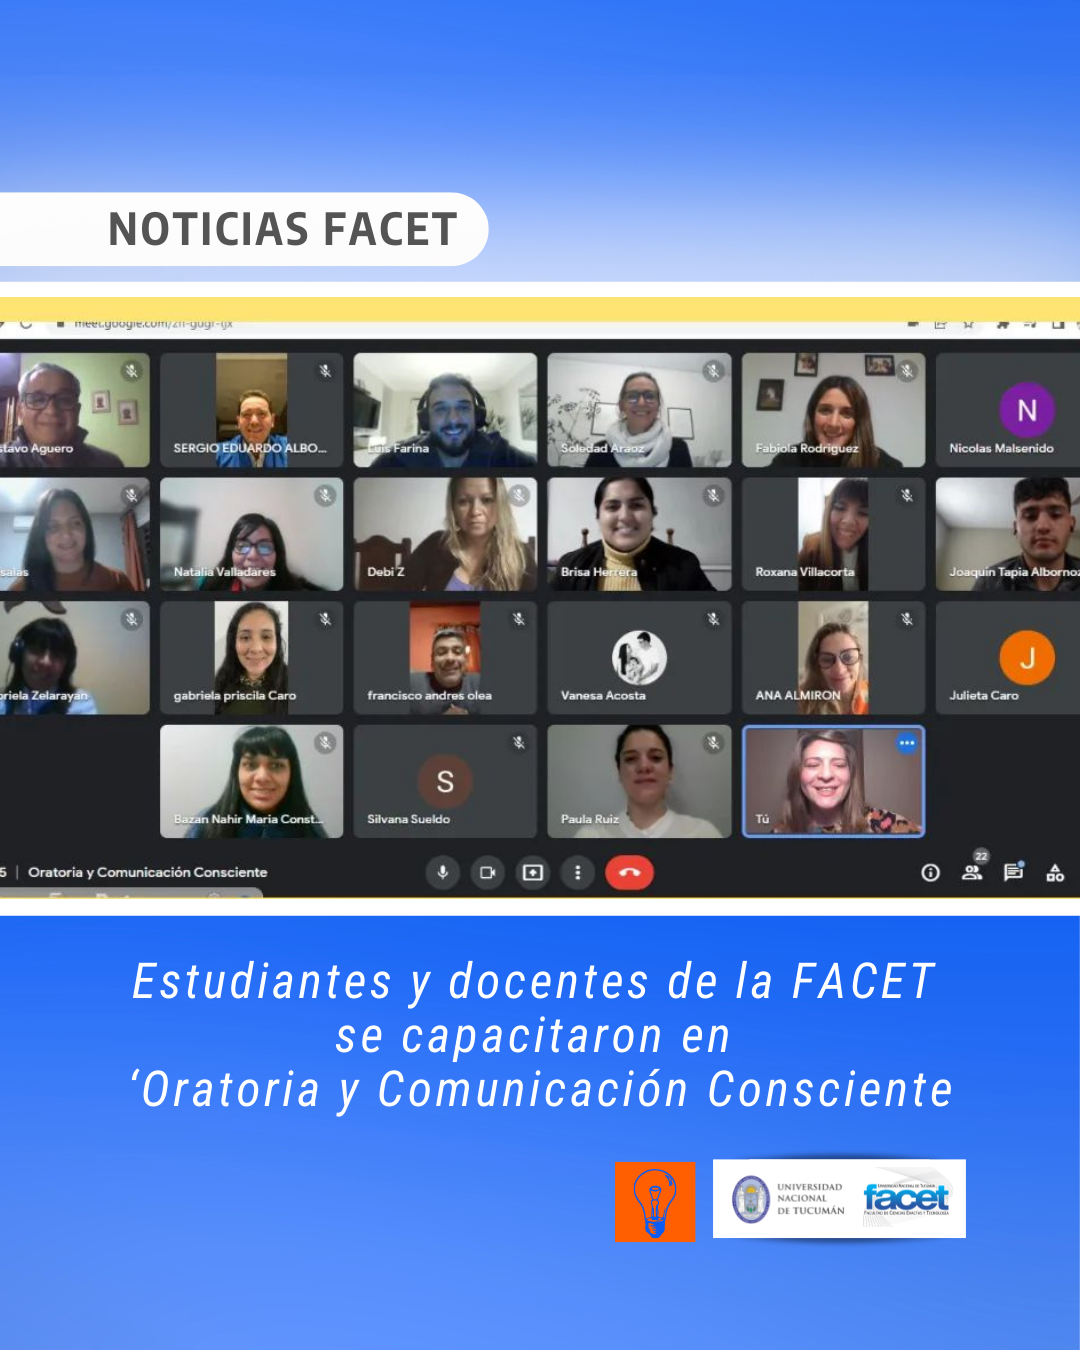 Noticias | El Club de Ingenio capacitó a estudiantes y docentes de la FACET en ‘Oratoria y Comunicación Consciente’